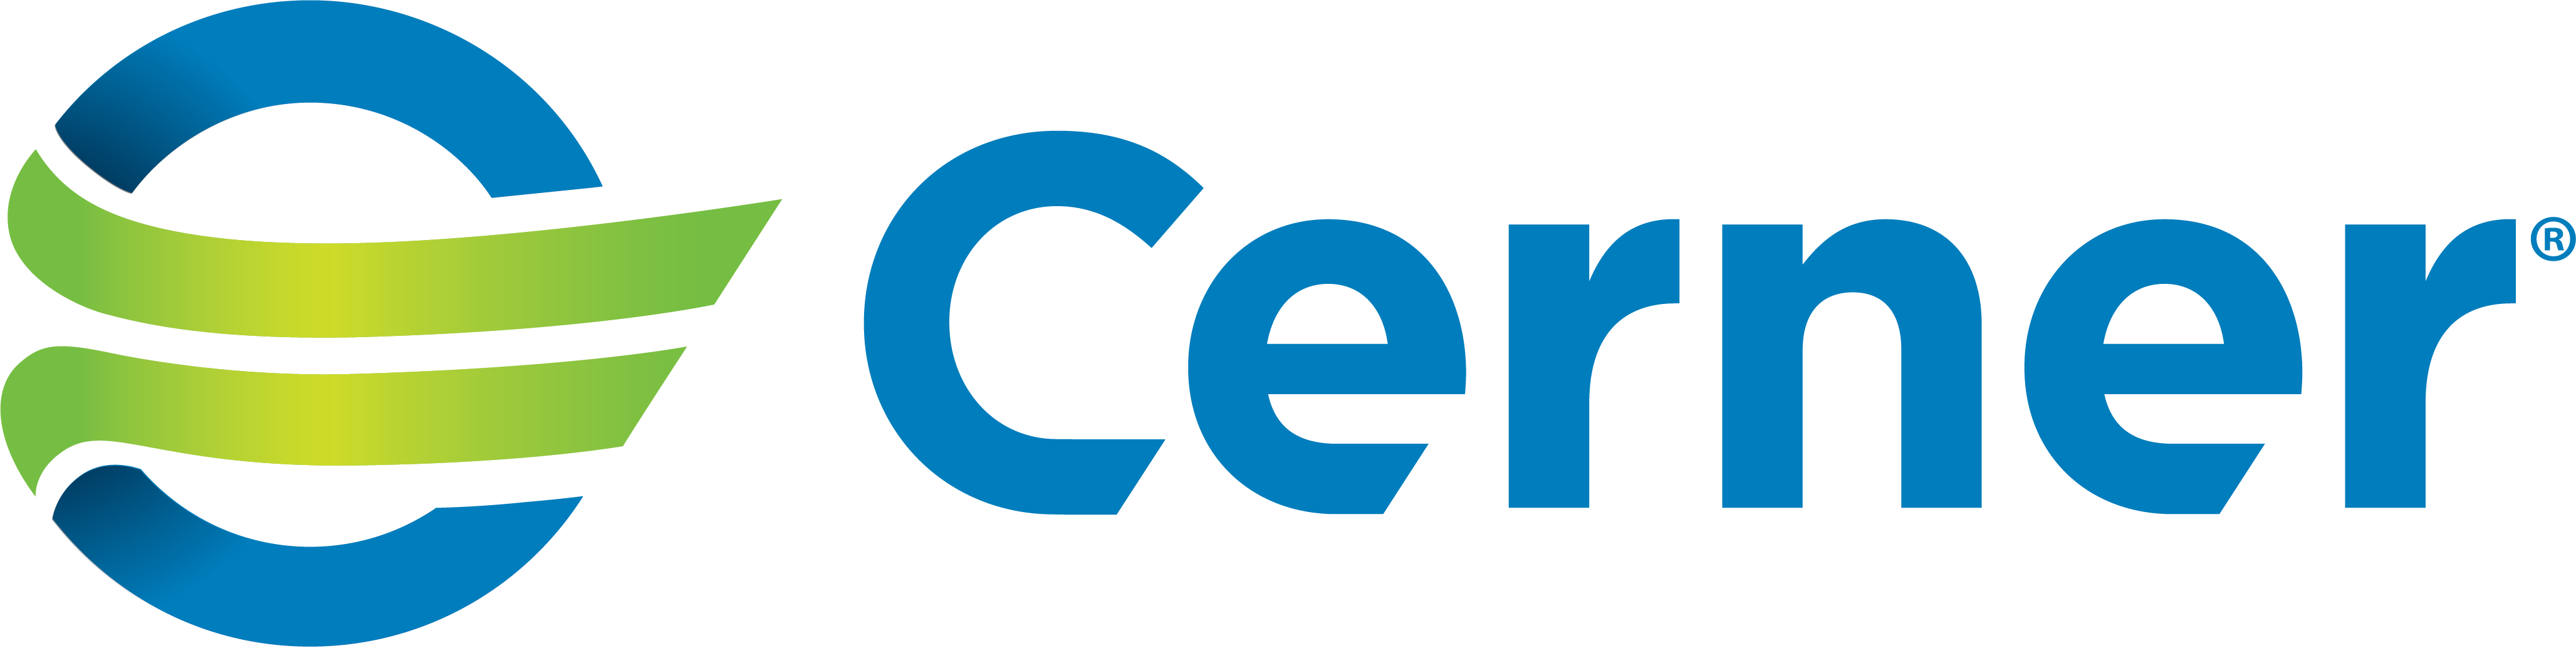 Cerner color logo horizontal (2).png